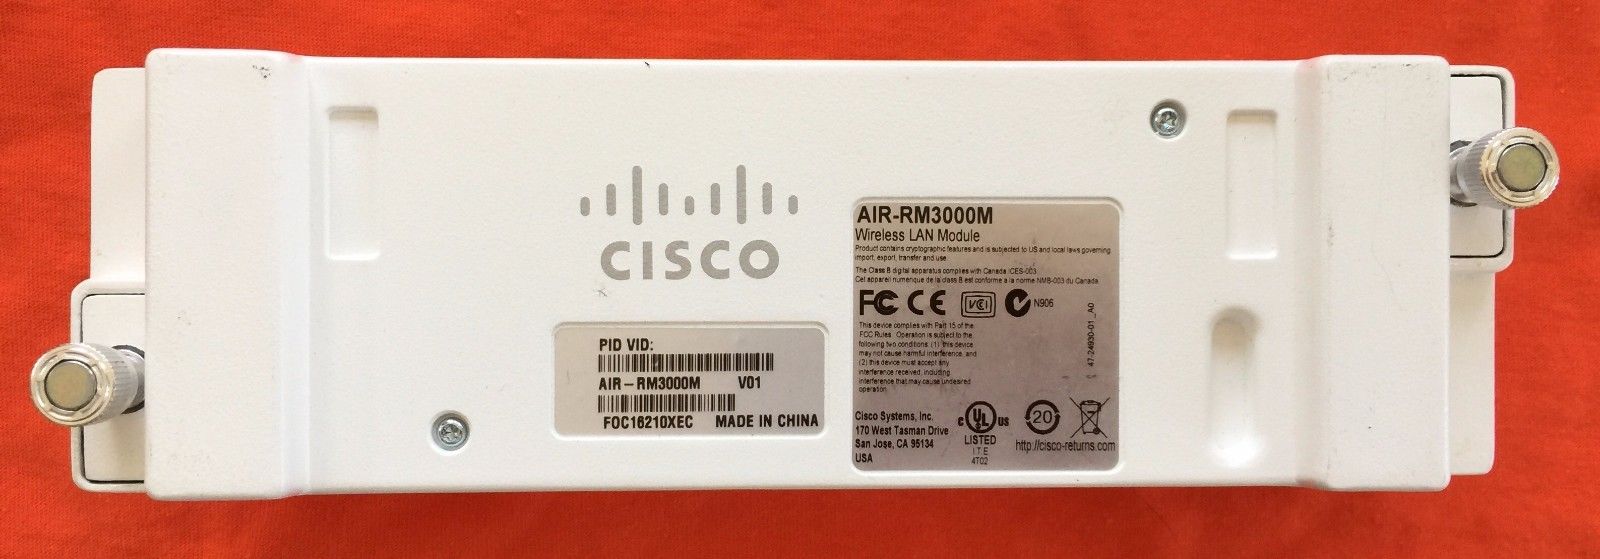 Cisco AIR-RM3000M